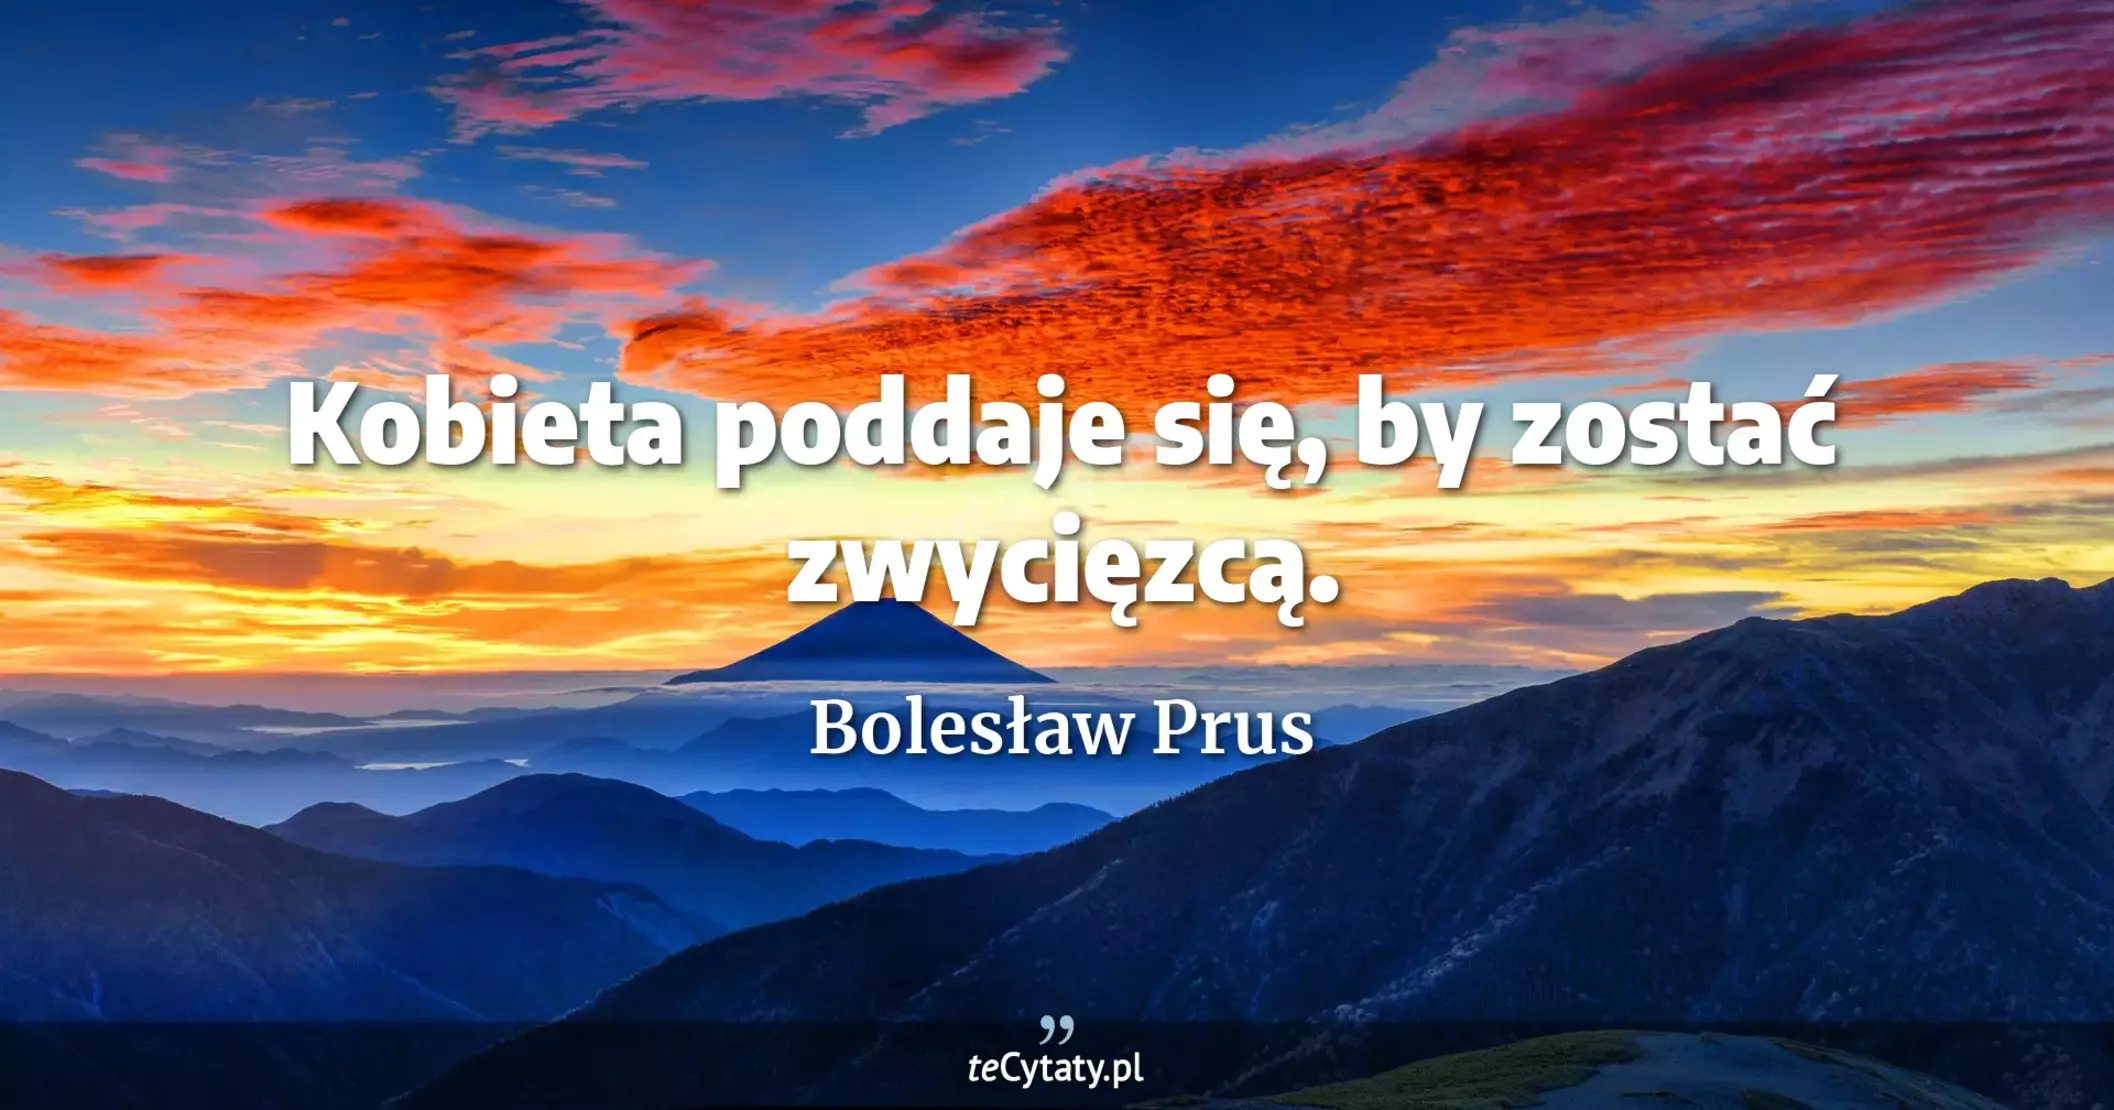 Kobieta poddaje się, by zostać zwycięzcą. - Bolesław Prus